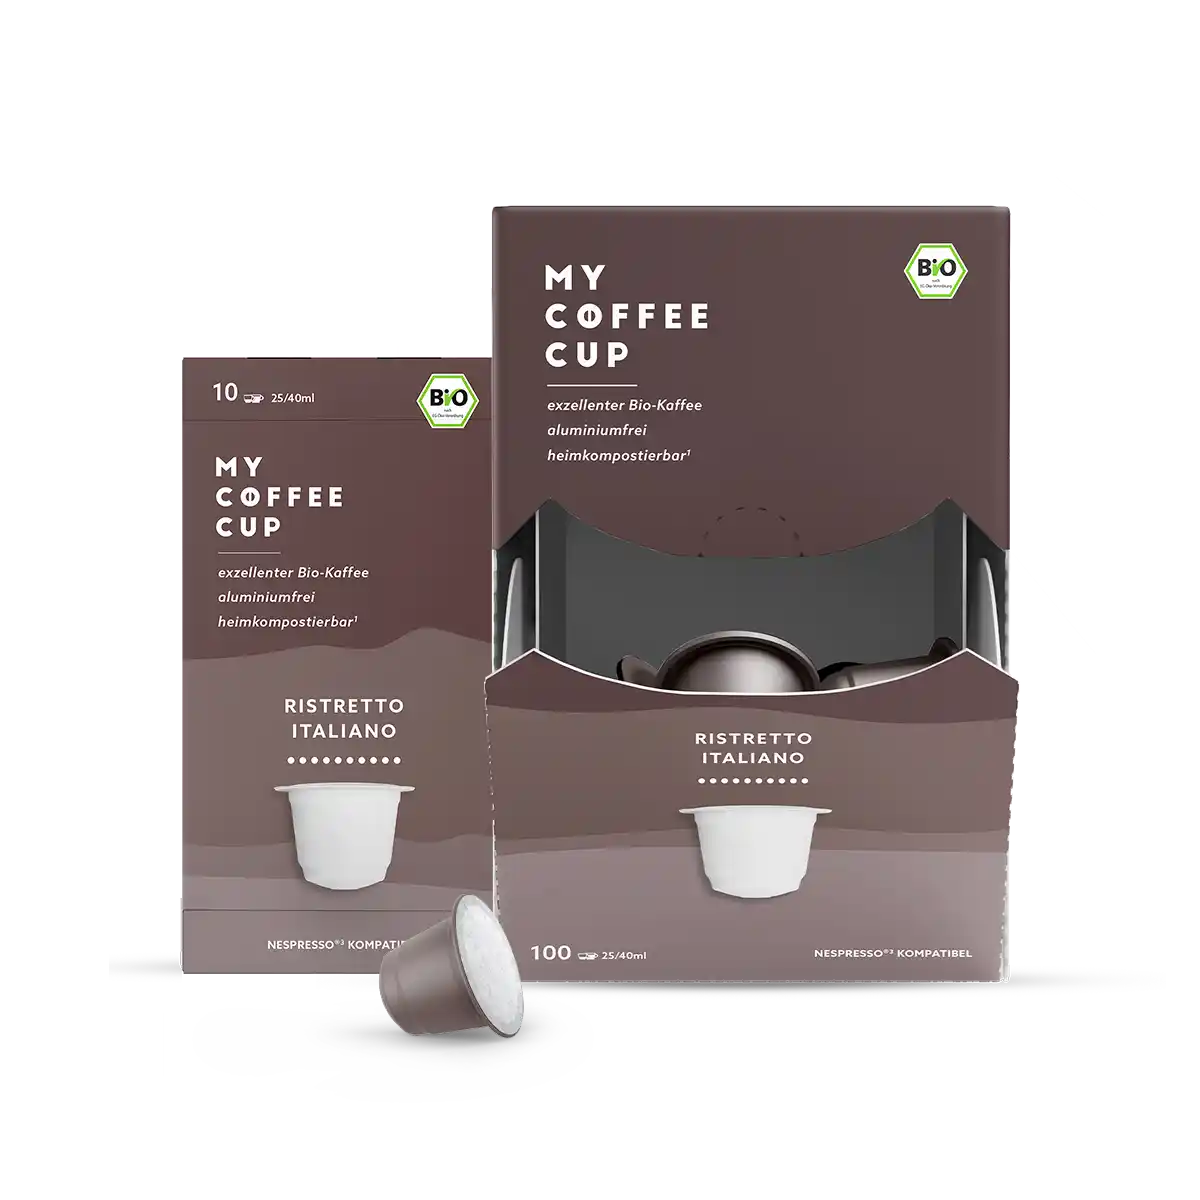 Nespresso kompatible Kapseln - bio ristretto italiano - MyCoffeeCup.de